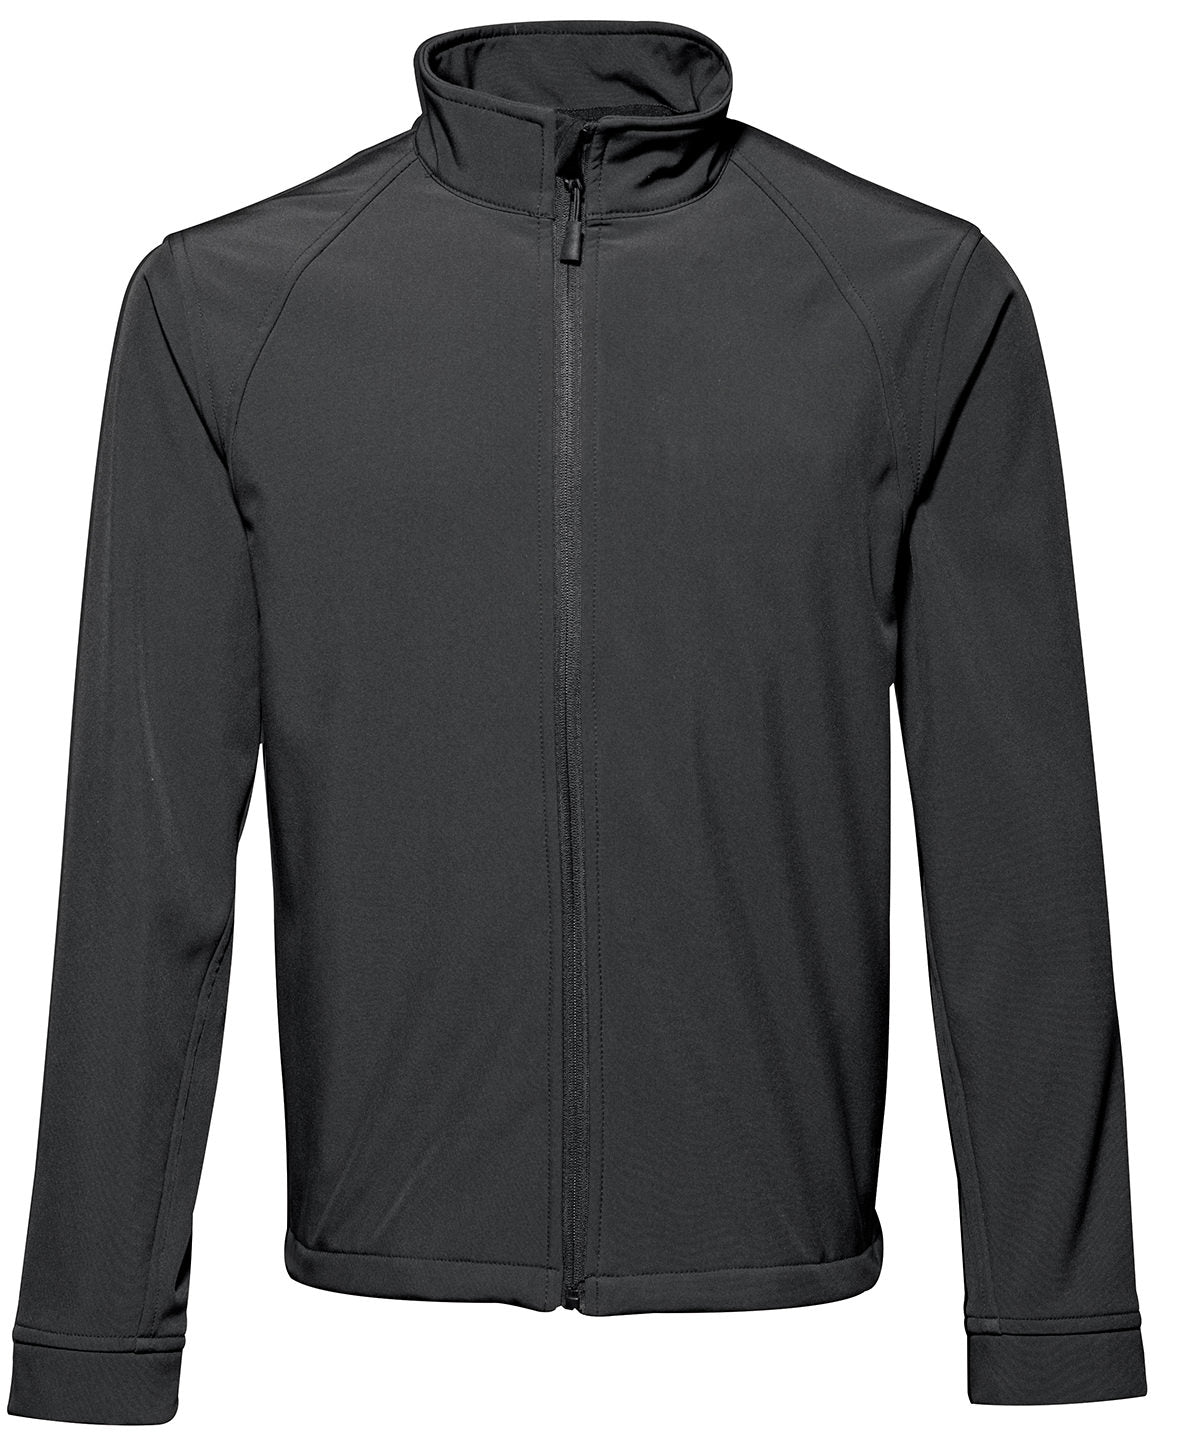 Personalised Jackets - Black 2786 Softshell jacket